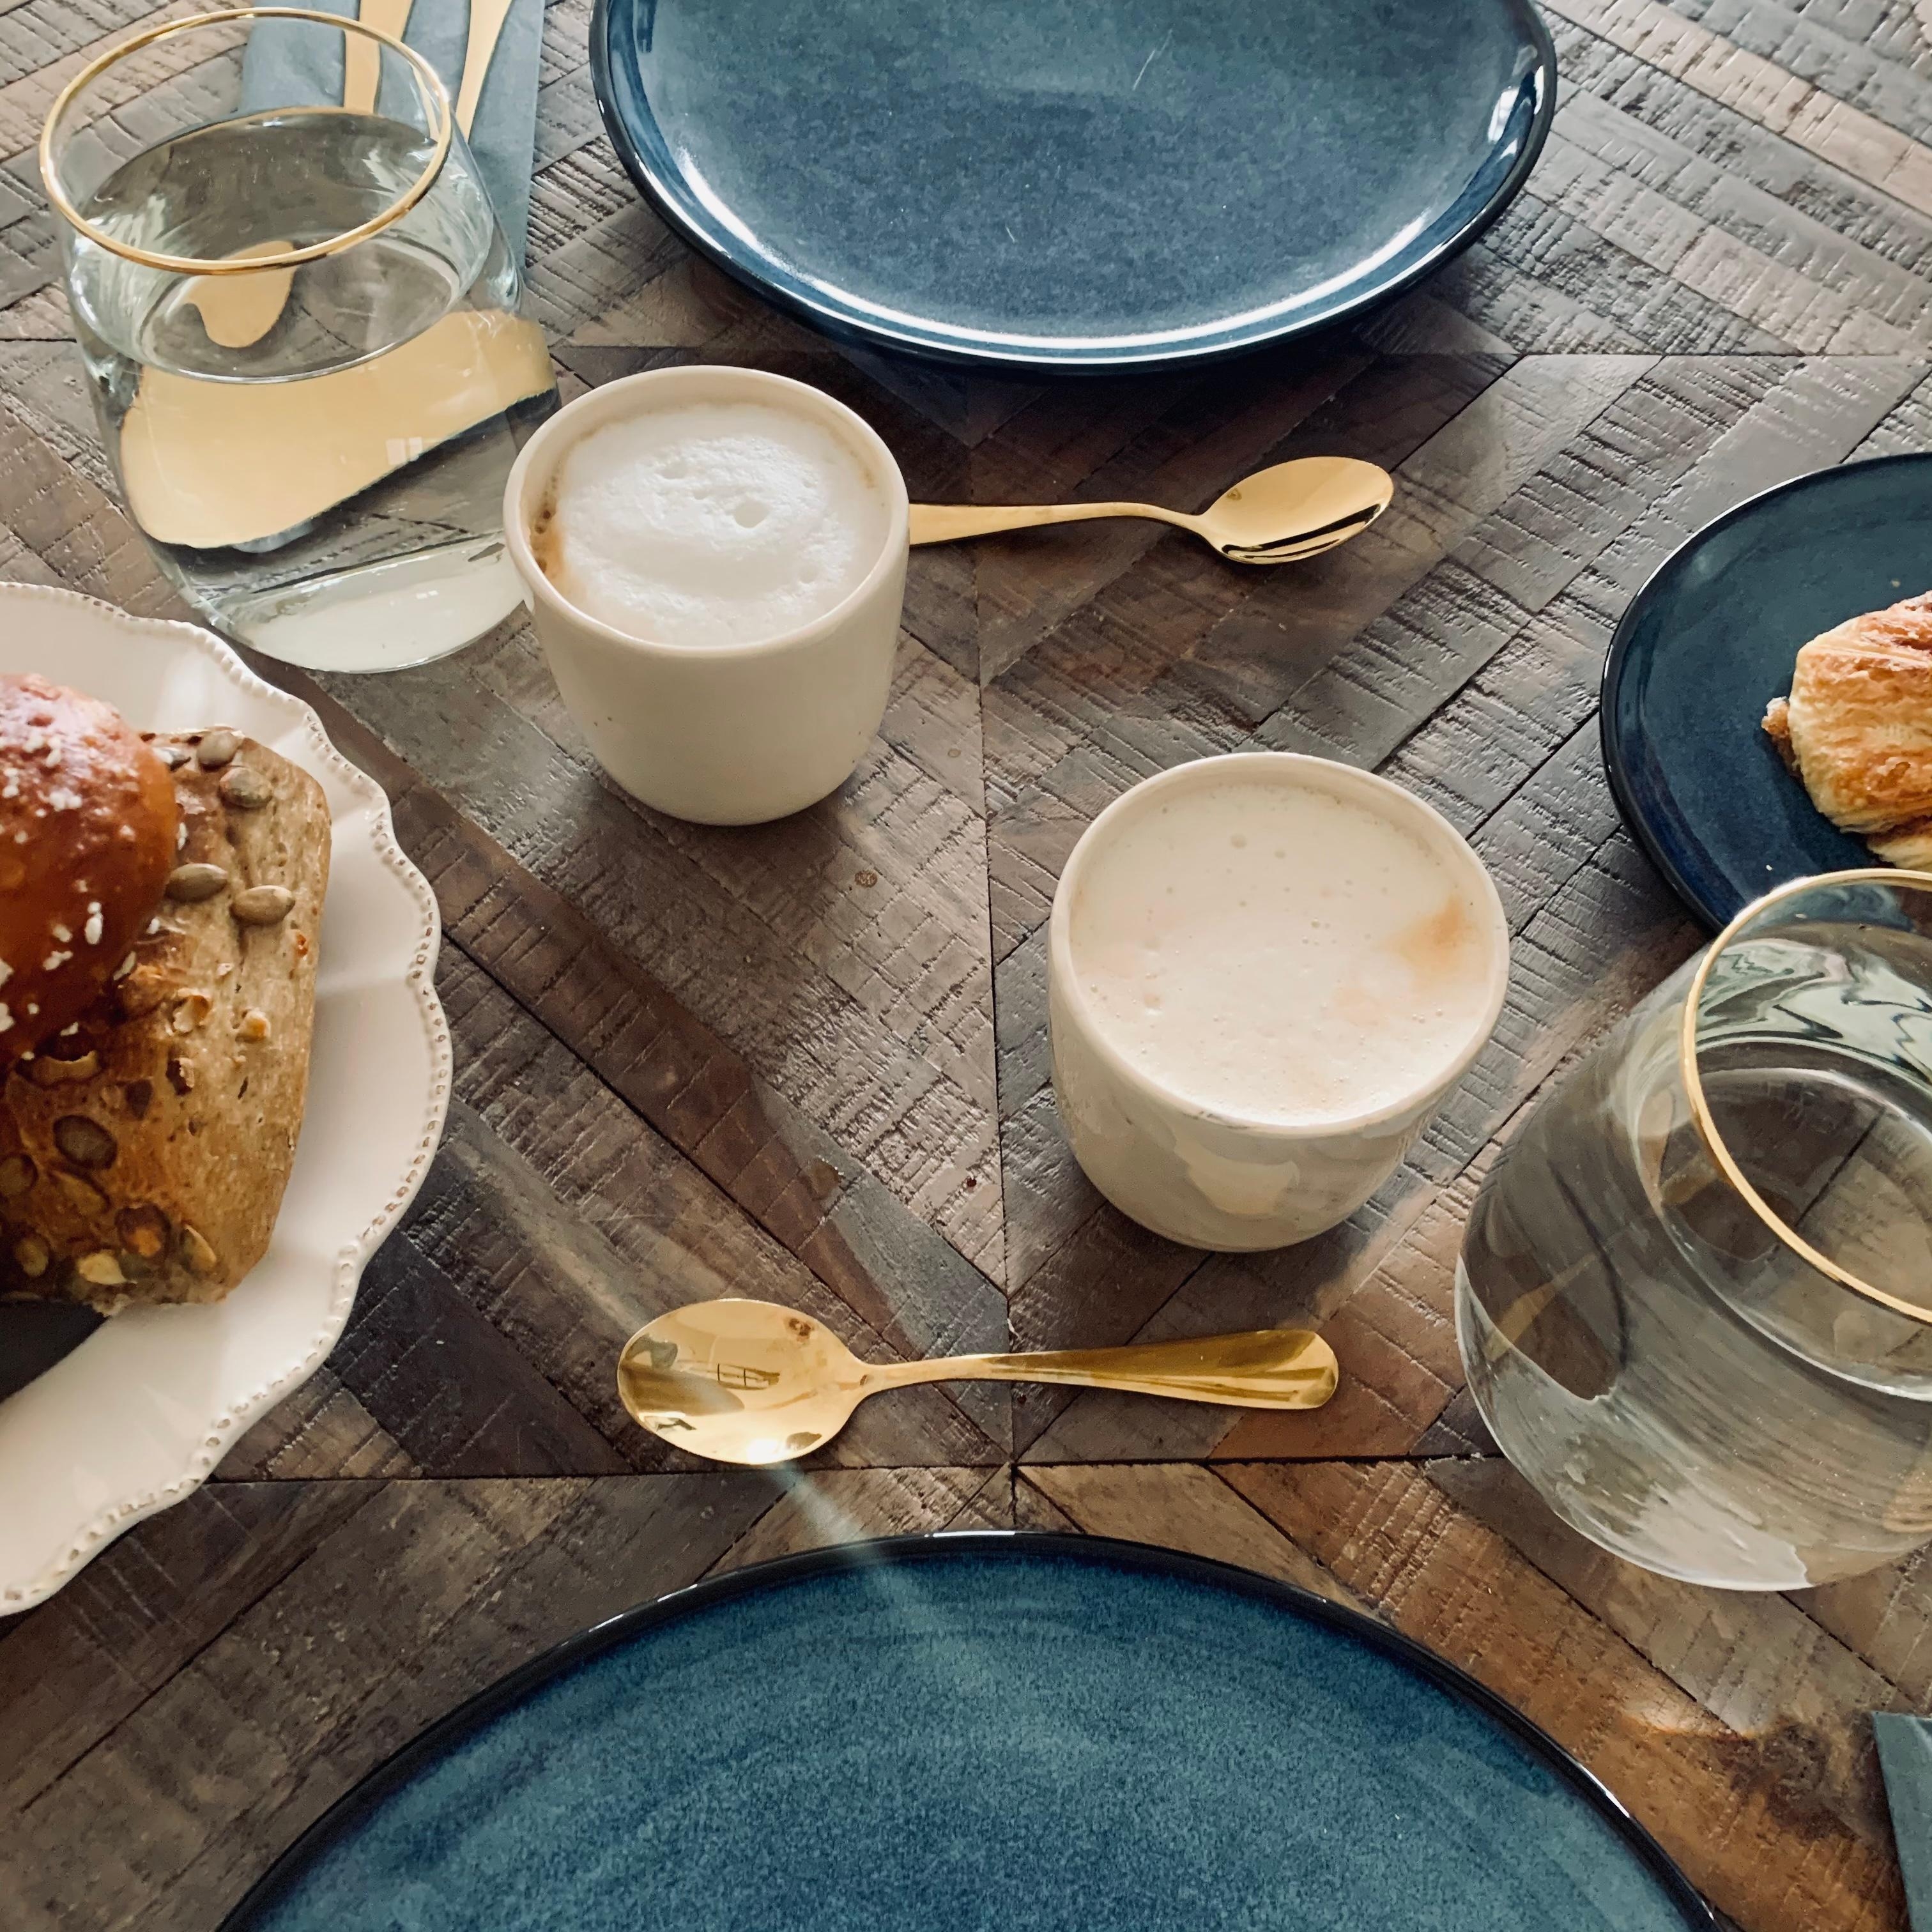 Mit meerblauen Tellern und handgemachten Keramiktassen decke ich den Tisch am liebsten #tischdeko #livingchallenge 